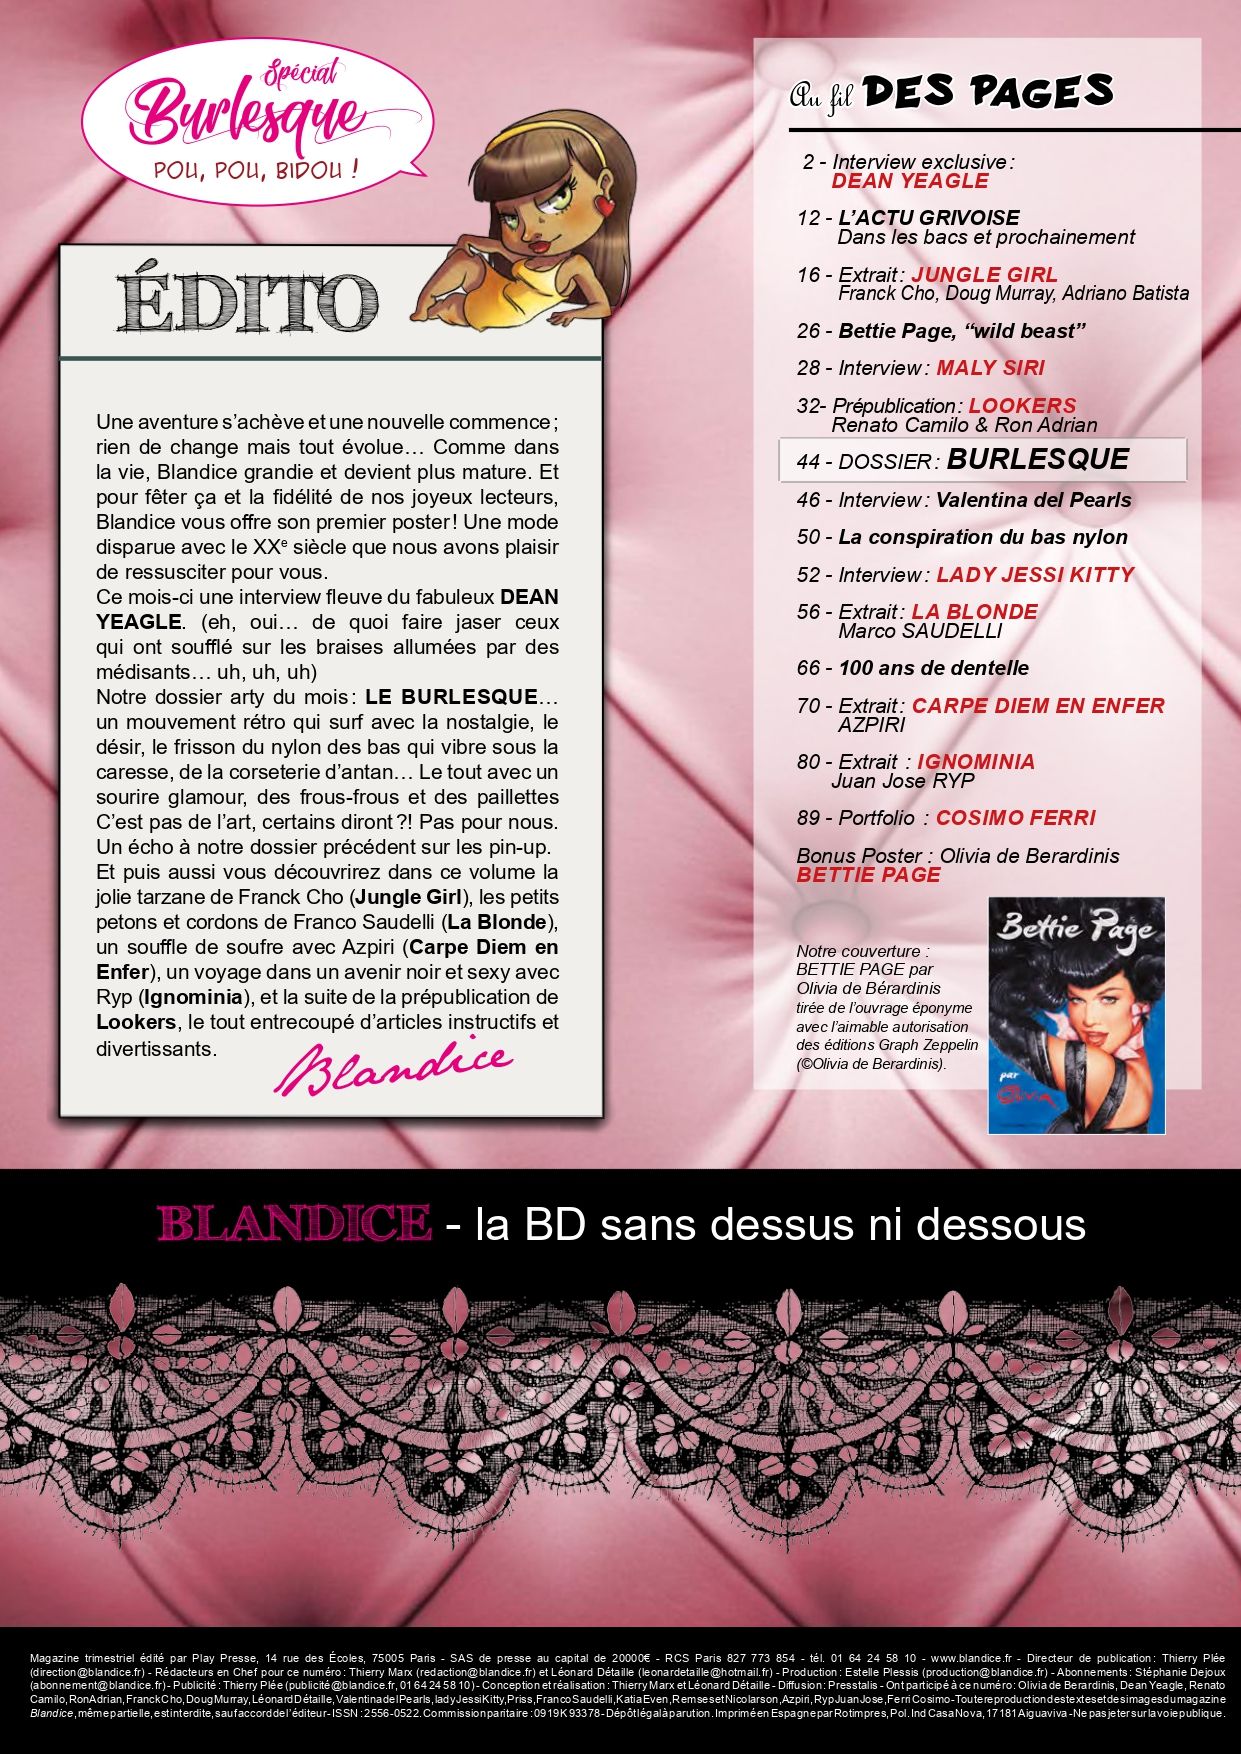 Blandice - 11 - Burlesque numero d'image 2